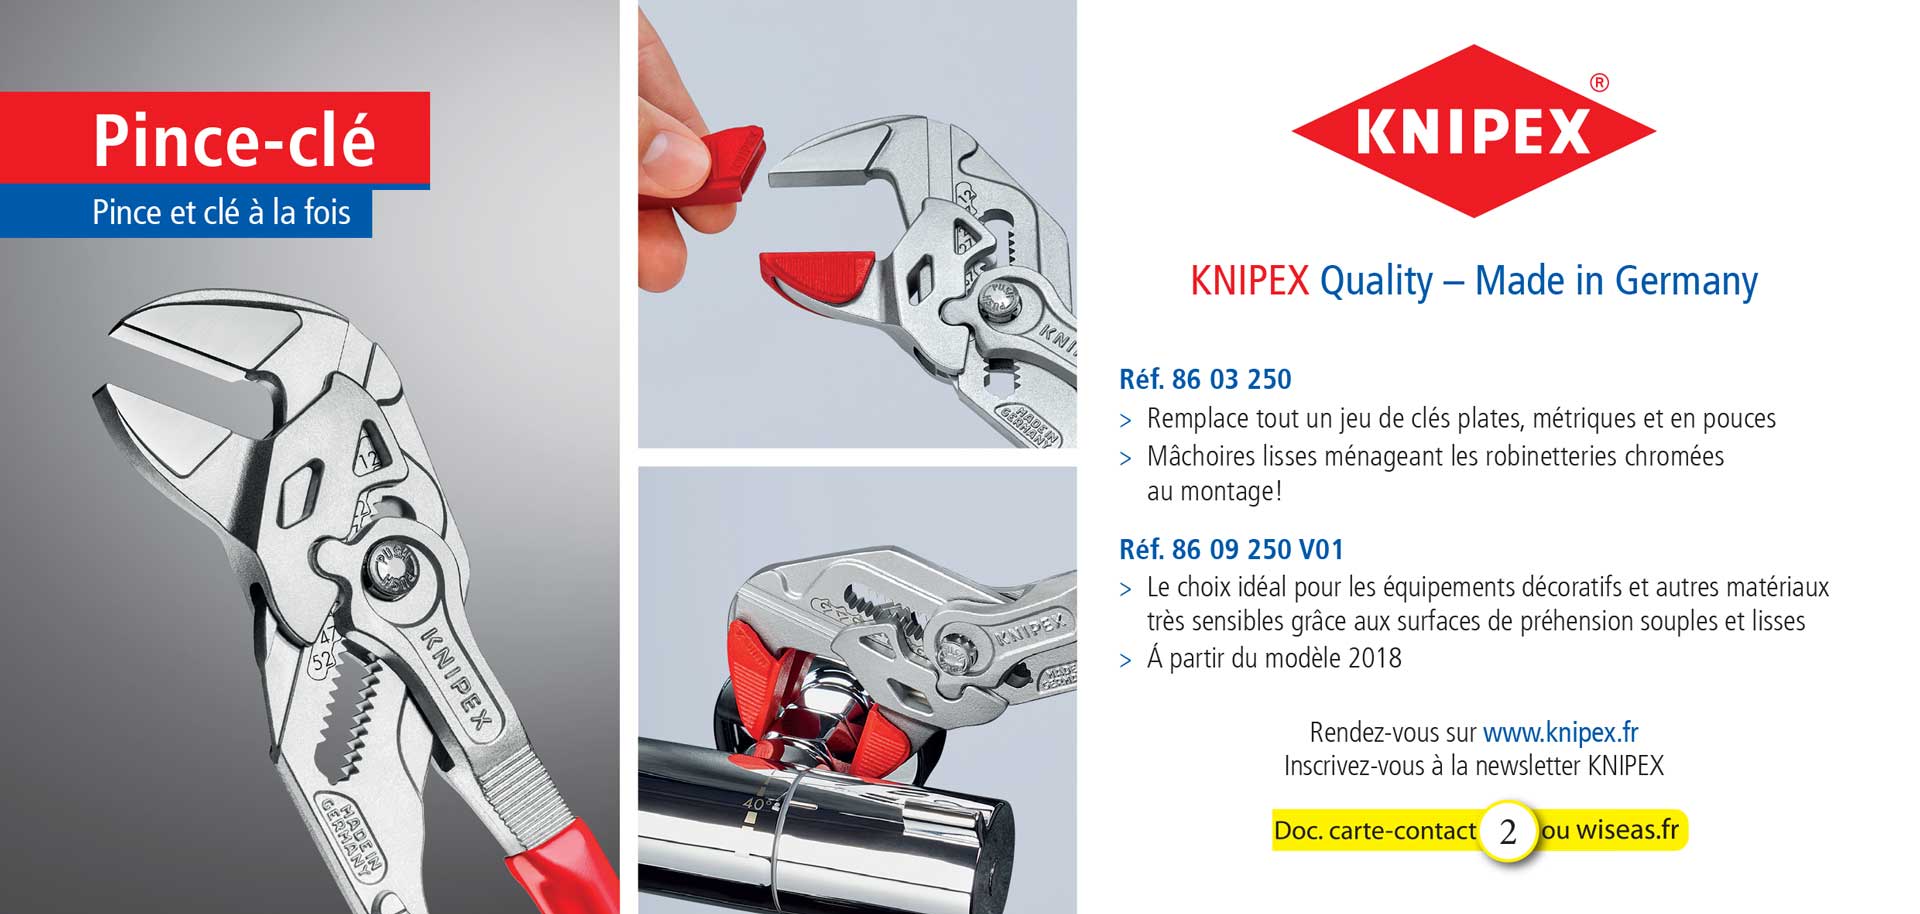 KNIPEX - 8603250 - 8609250 V01